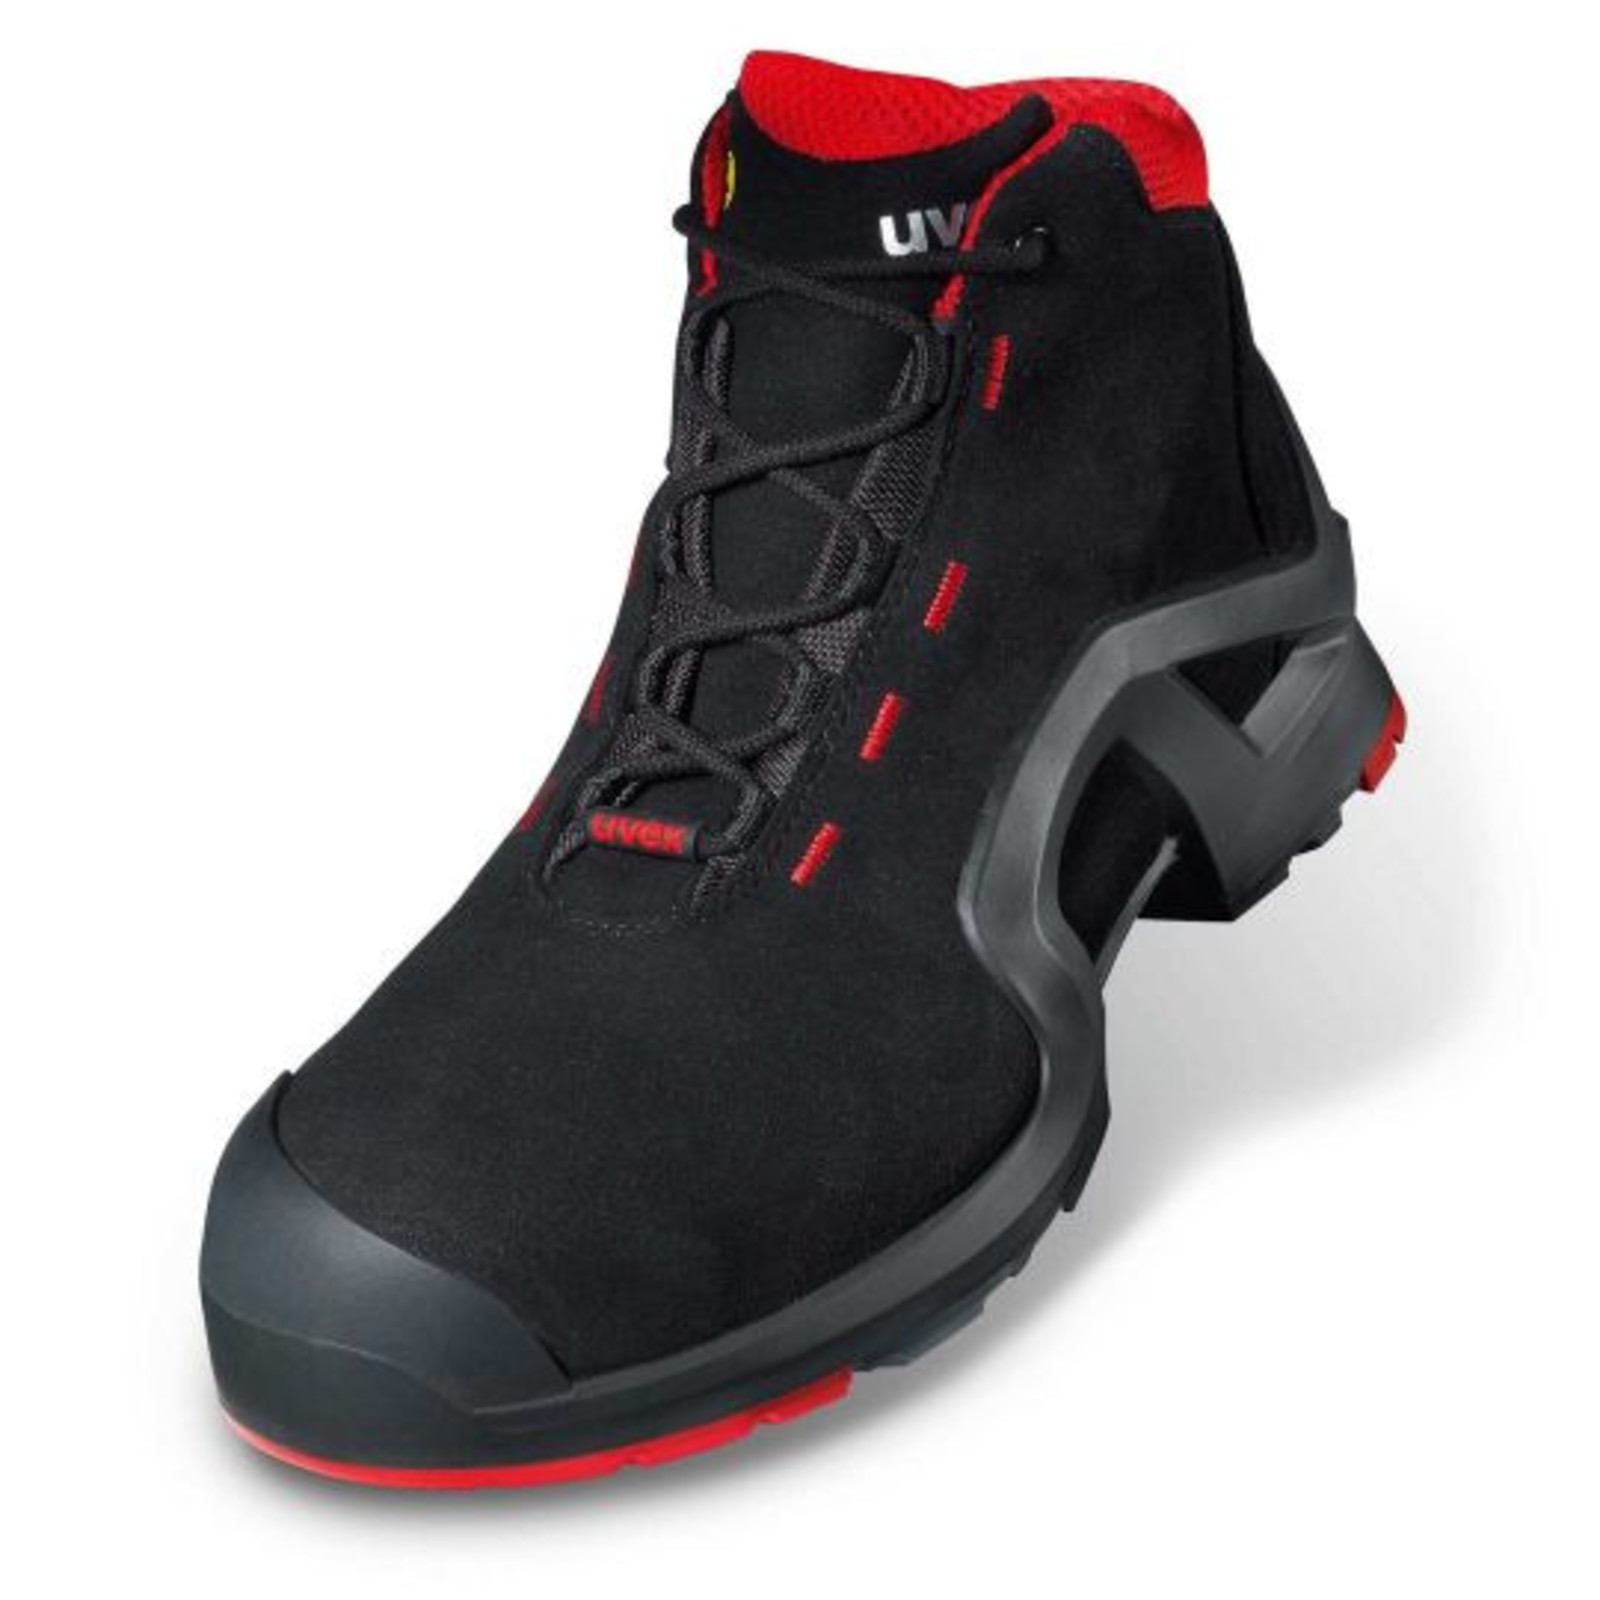 Vysoká bezpečnostná obuv Uvex 1 x-tended support S3 85172 - veľkosť: 36, farba: čierna/červená